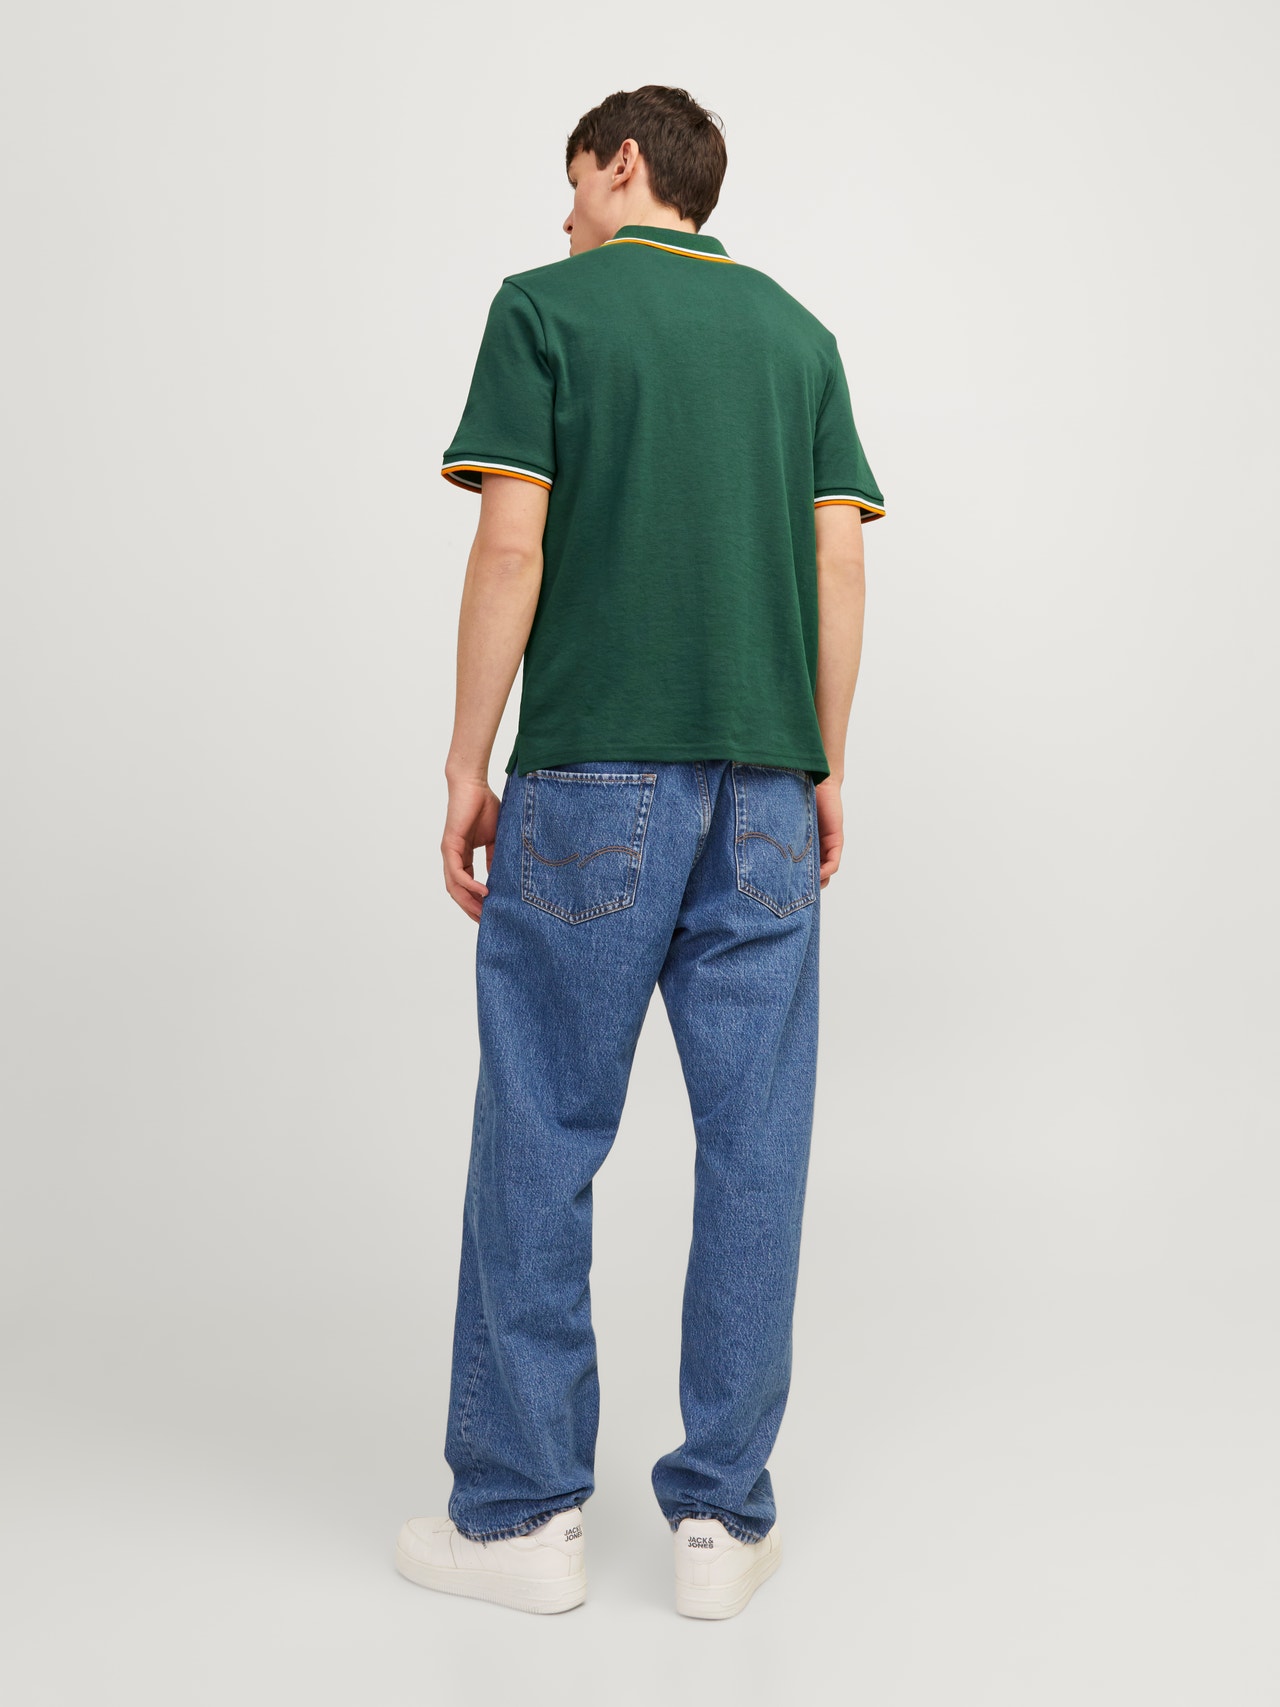 Jack & Jones 2-pack Gedrukt Polo T-shirt -Navy Blazer - 12256996